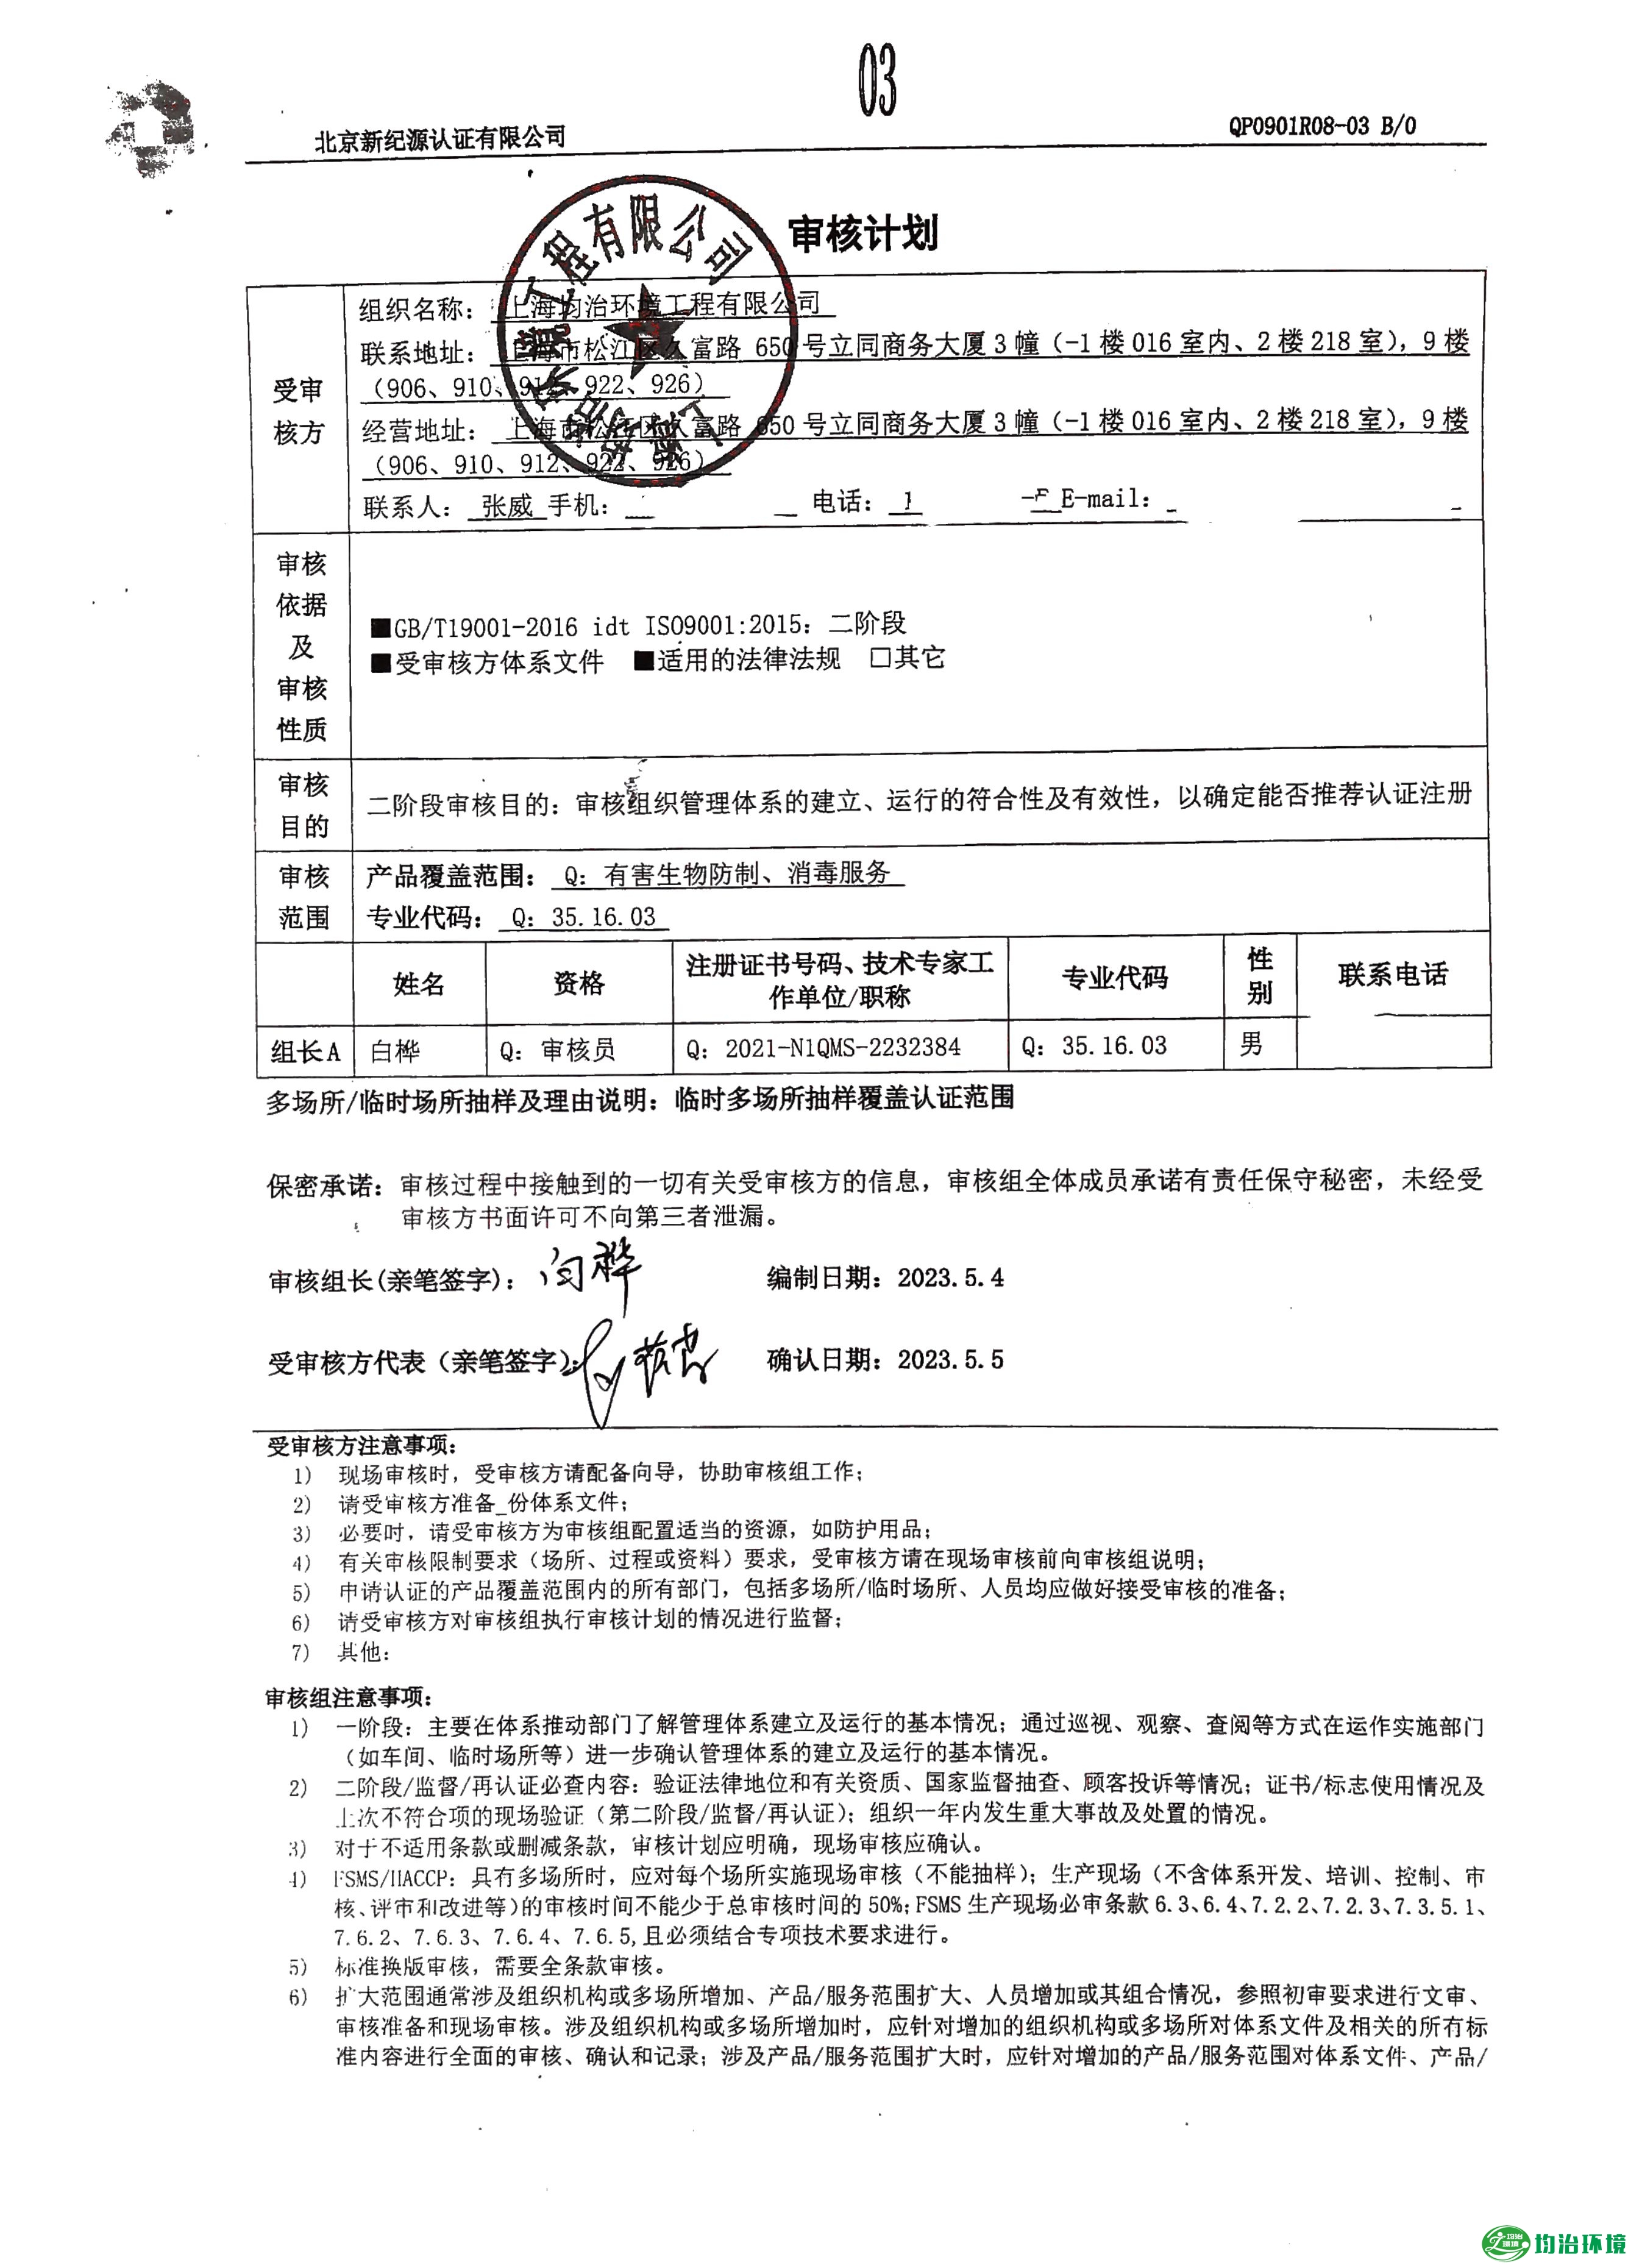 上海均治环境工程有限公司顺利通过质量管理体系认证工作